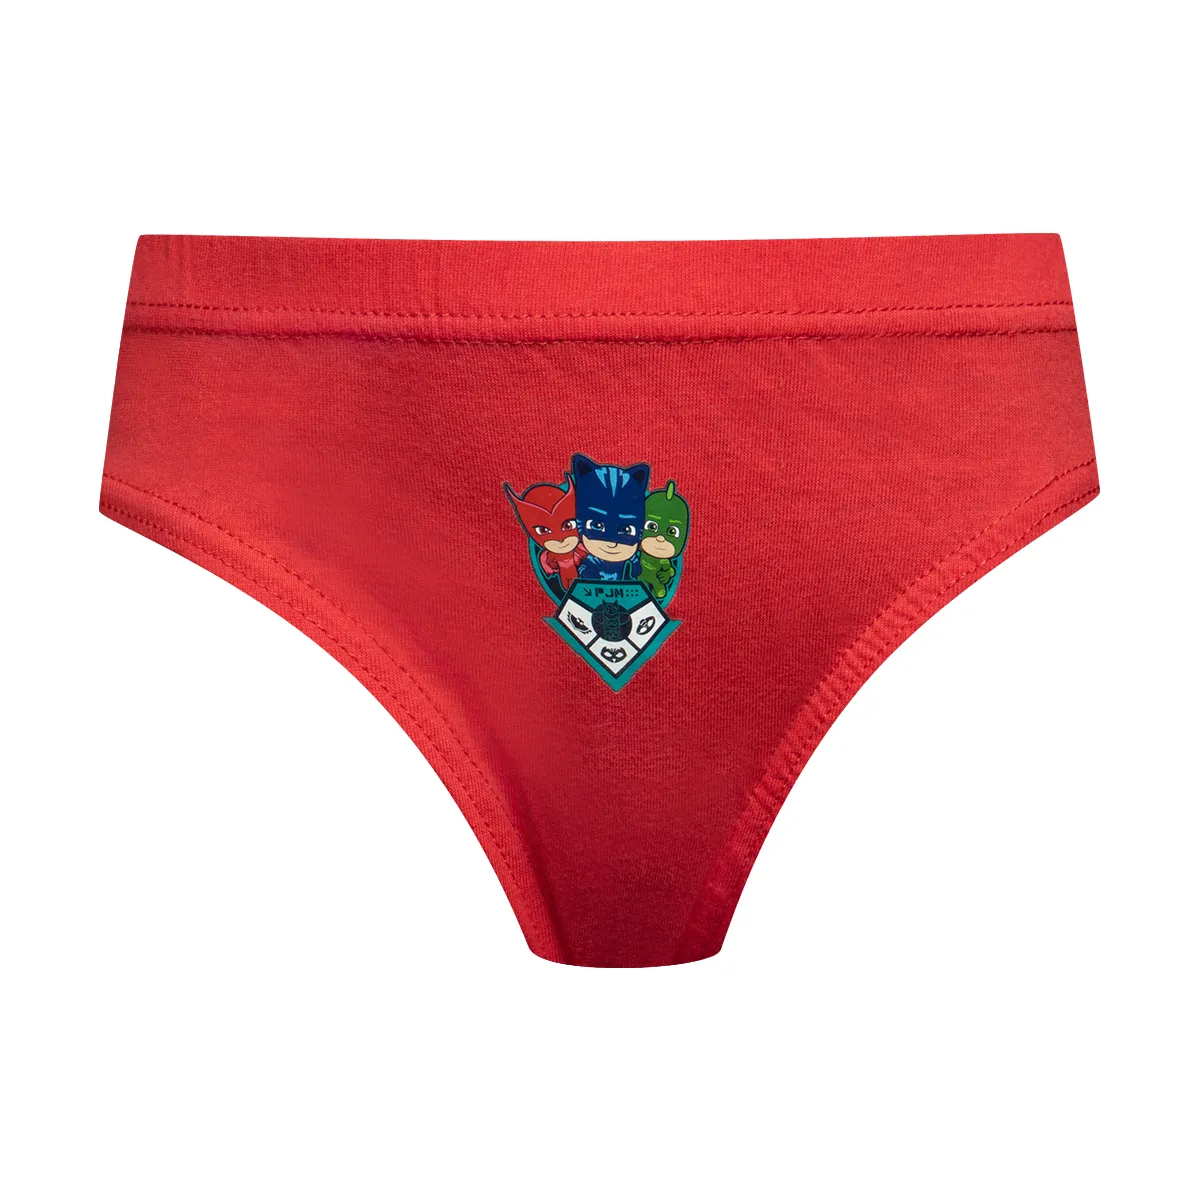 PJ Masks 3 pack briefs red & navy - BOYS 2-8 YEARS Underwear